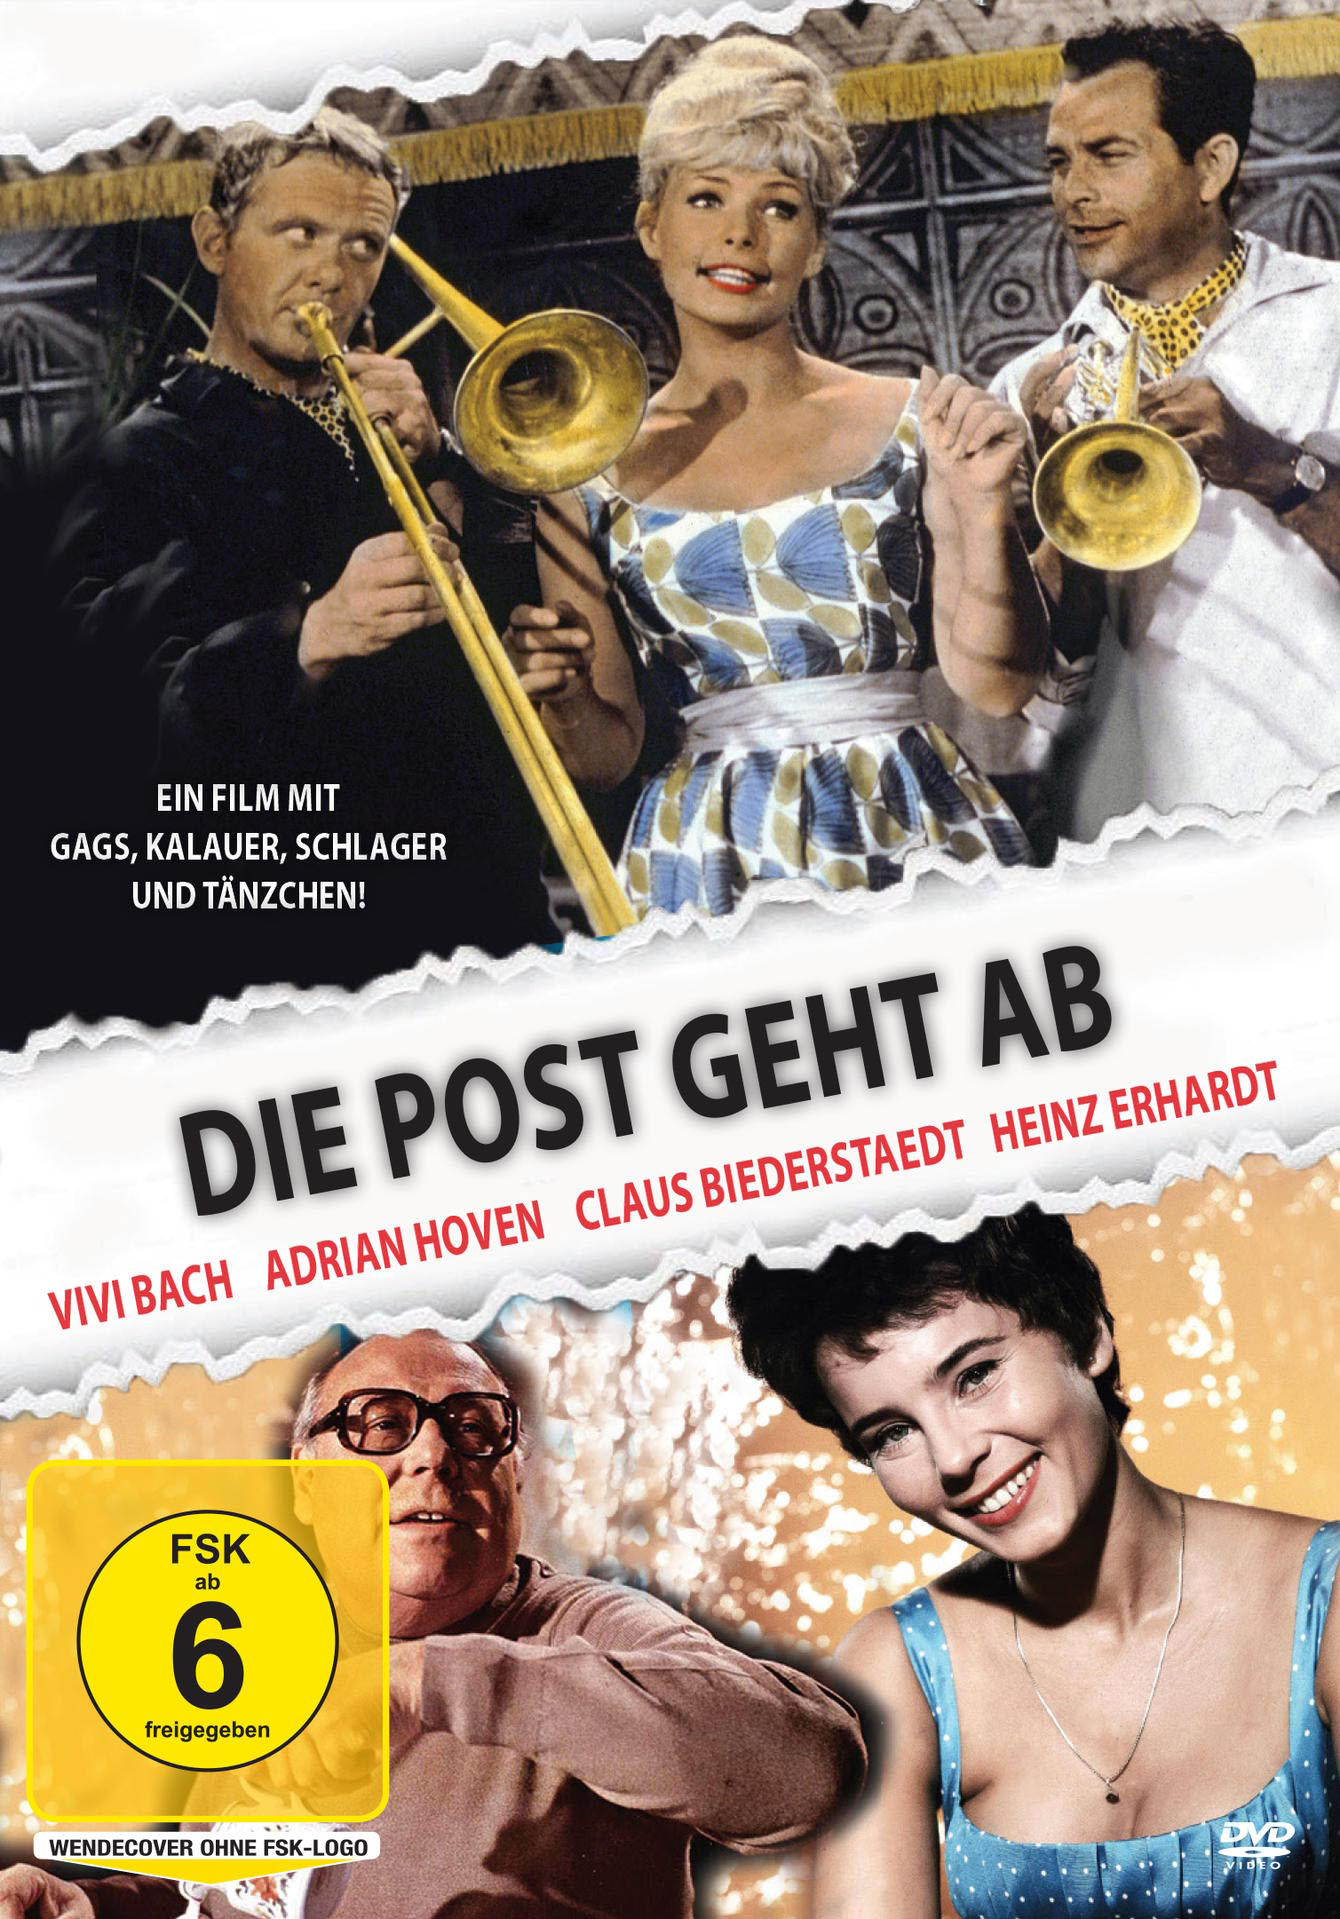 Die Post DVD geht ab Heinz - Erhardt